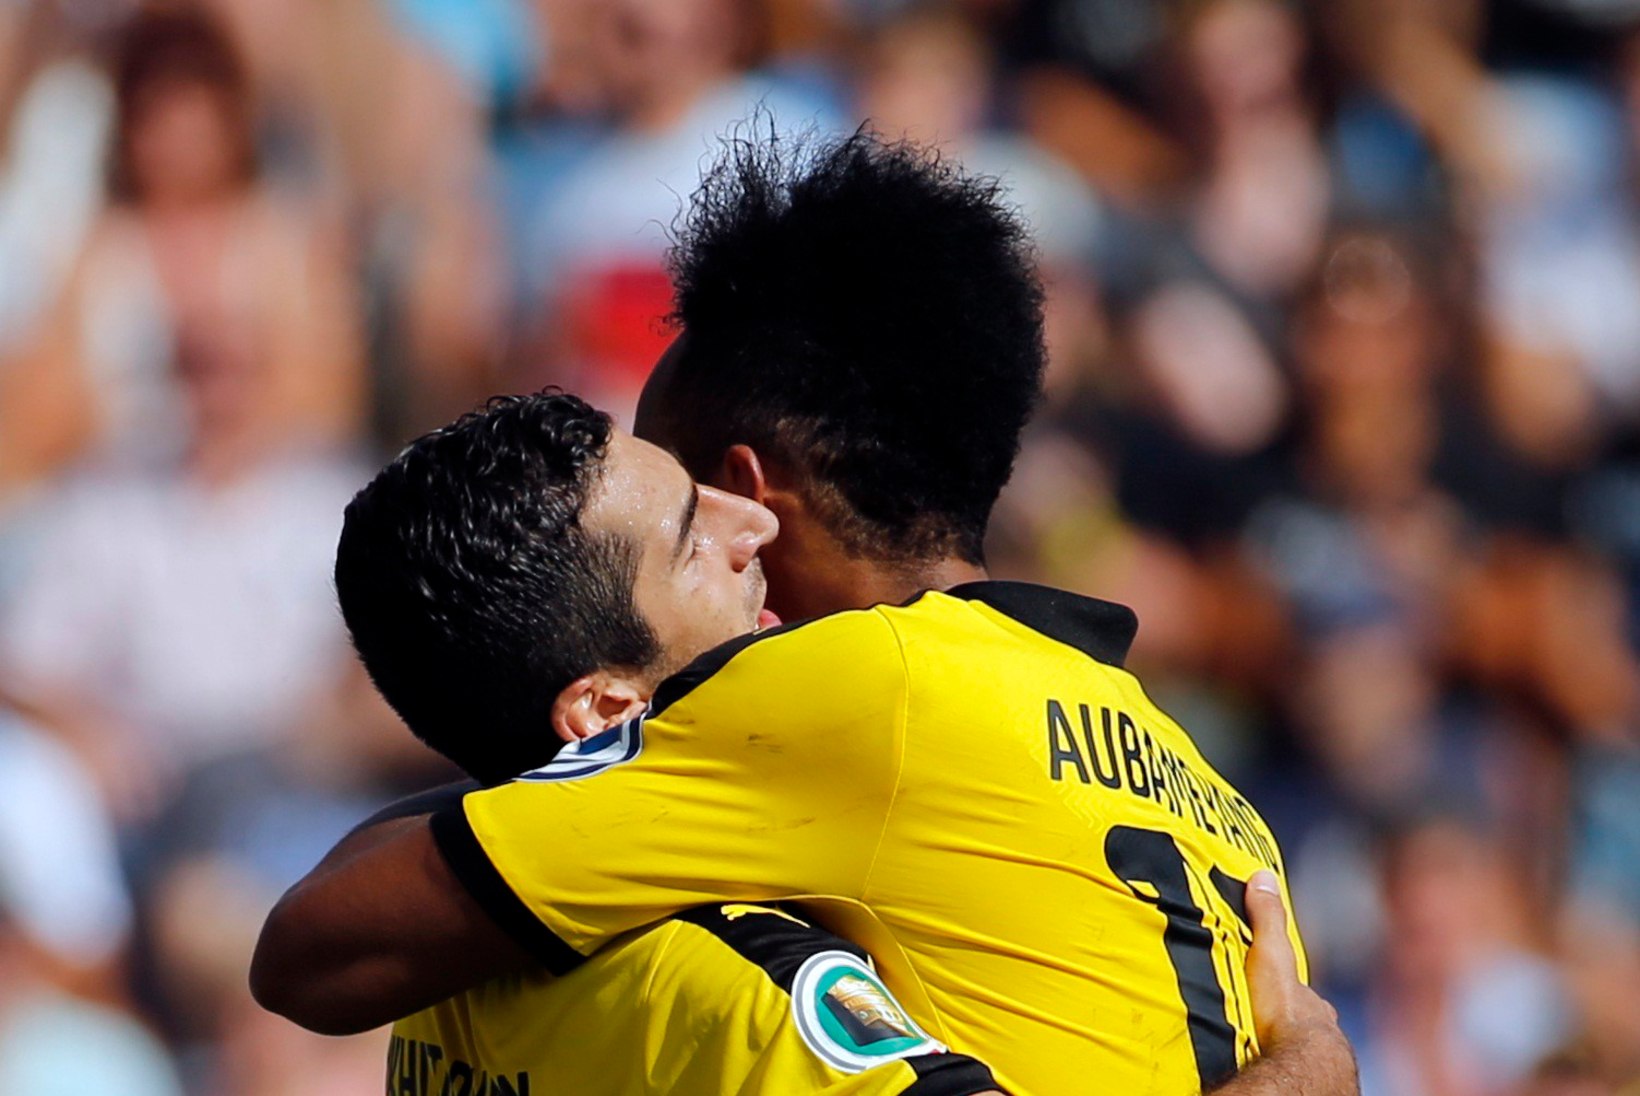 VIDEO | Vana hea Dortmund on tagasi? Borussia hävitas Bundesliga läinud hooaja kolmanda 4:0!